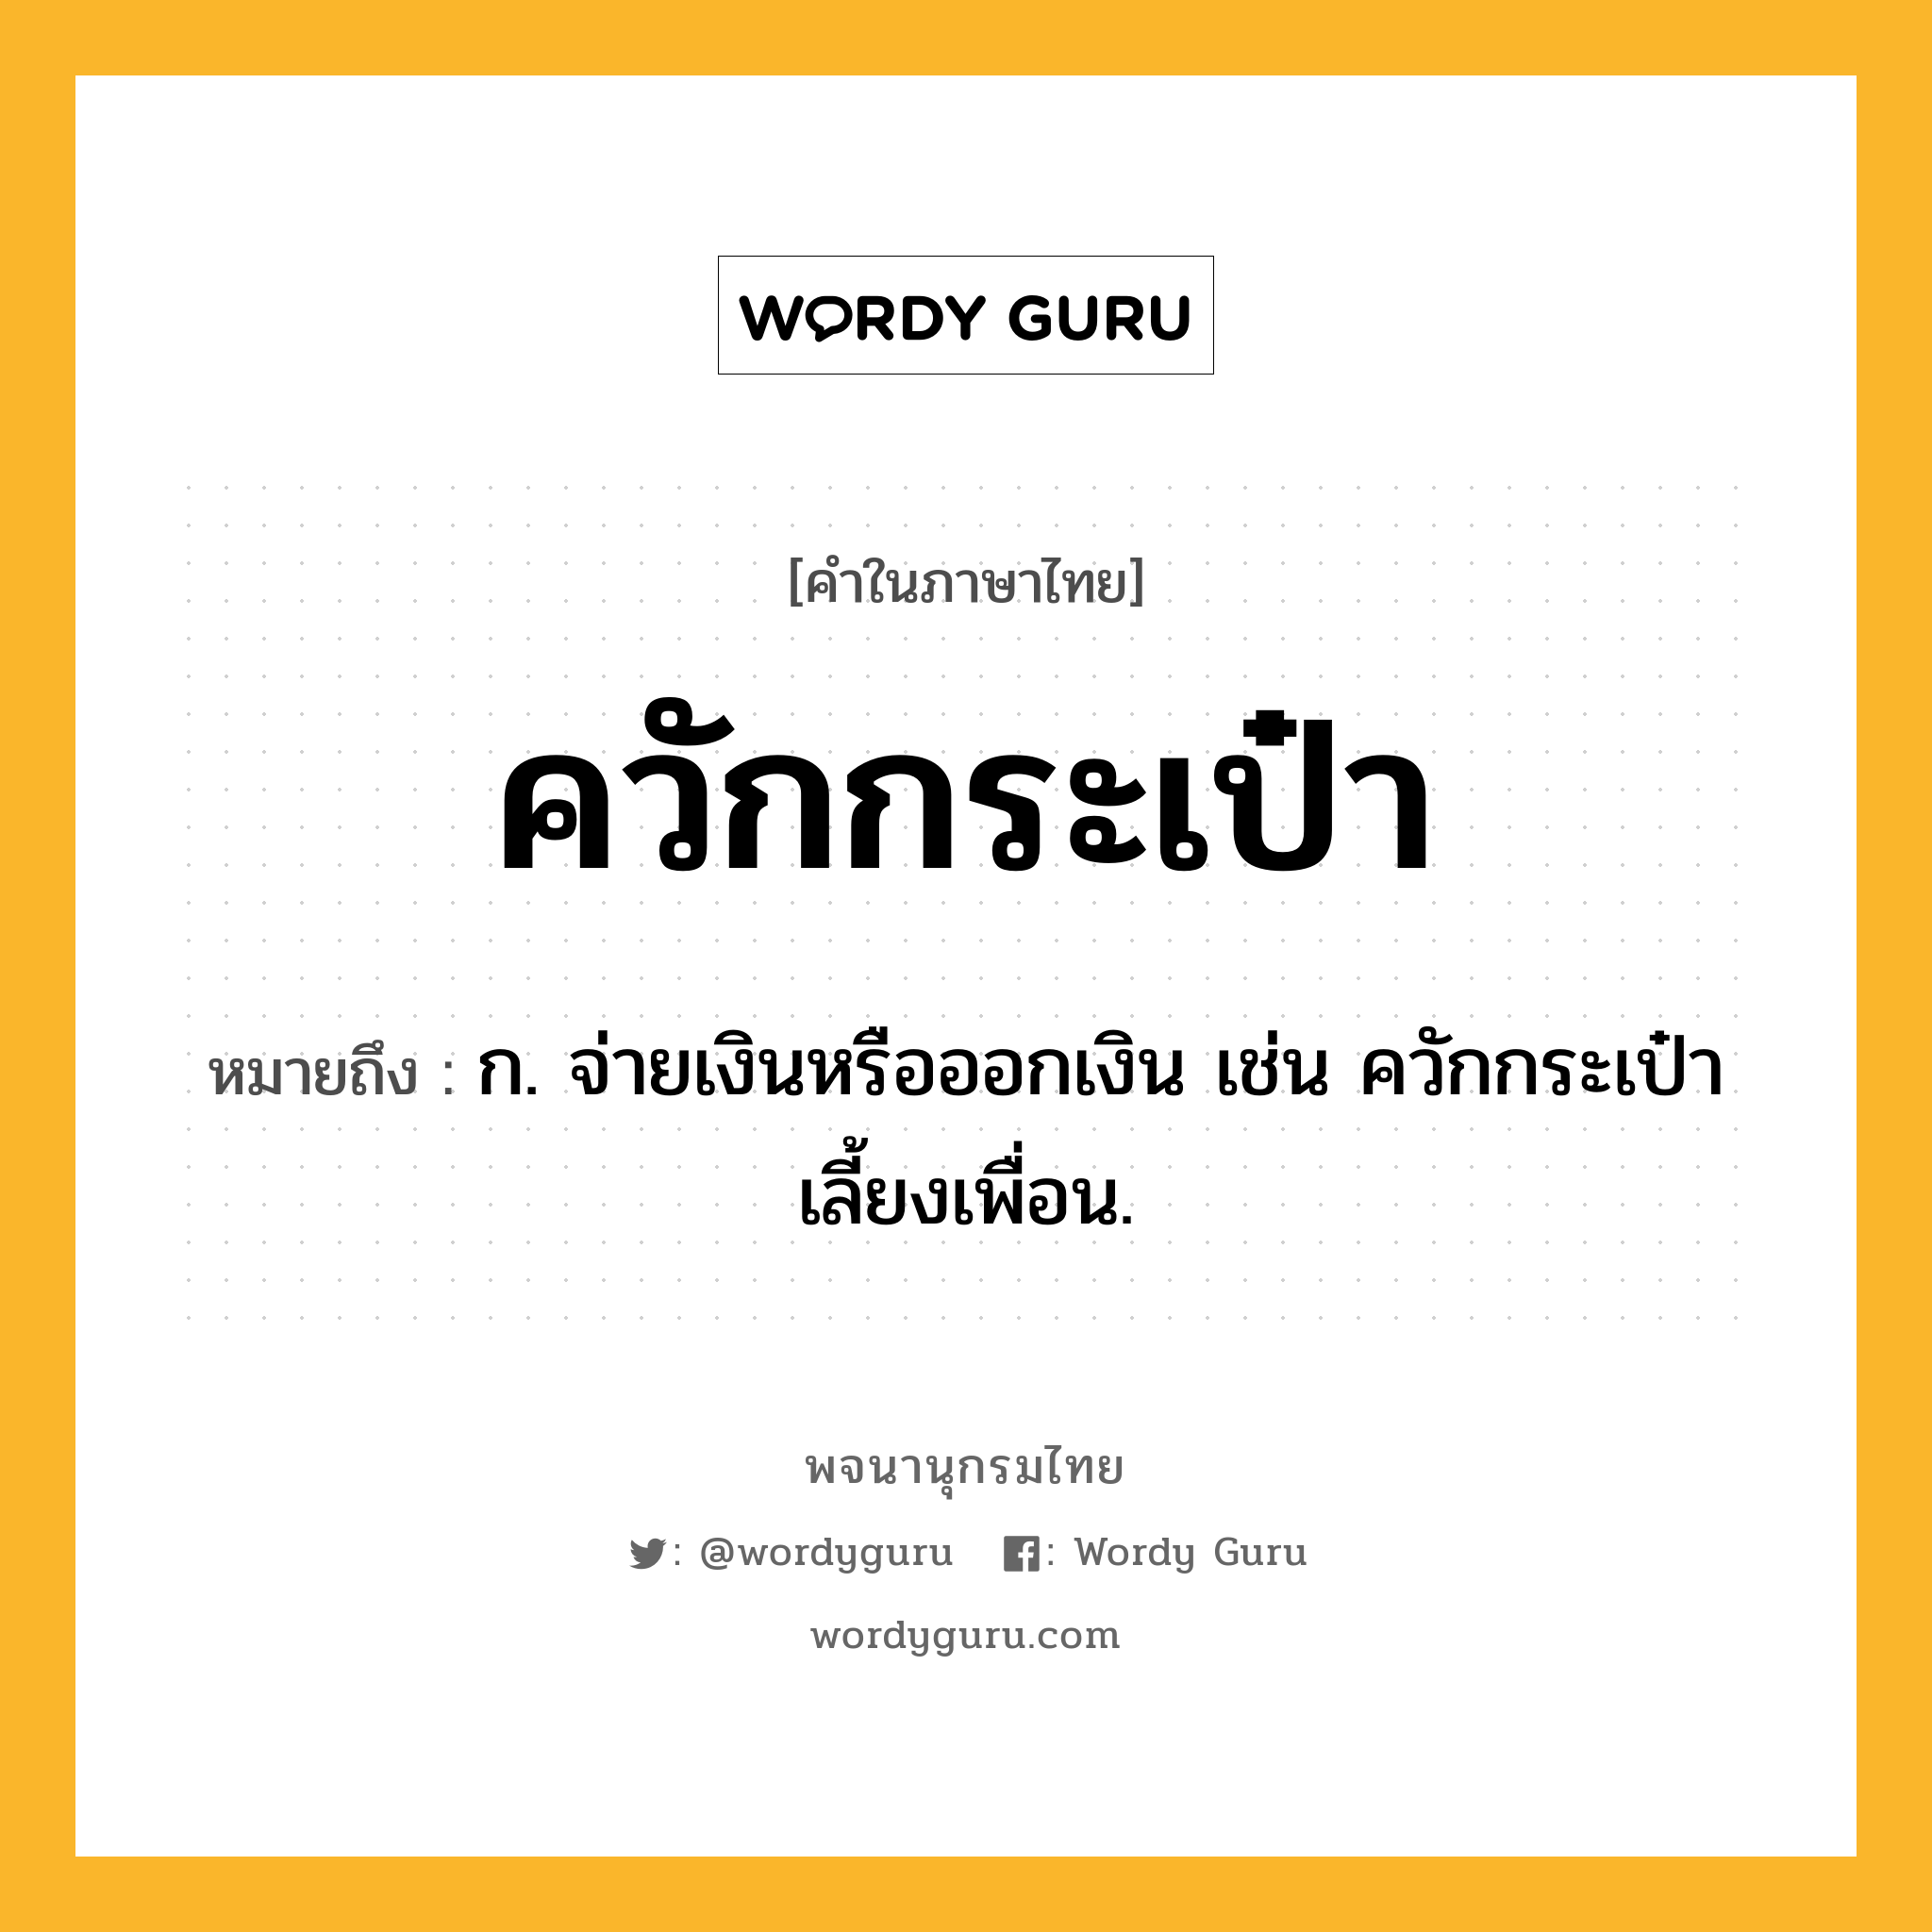 ควักกระเป๋า หมายถึงอะไร?, คำในภาษาไทย ควักกระเป๋า หมายถึง ก. จ่ายเงินหรือออกเงิน เช่น ควักกระเป๋าเลี้ยงเพื่อน.